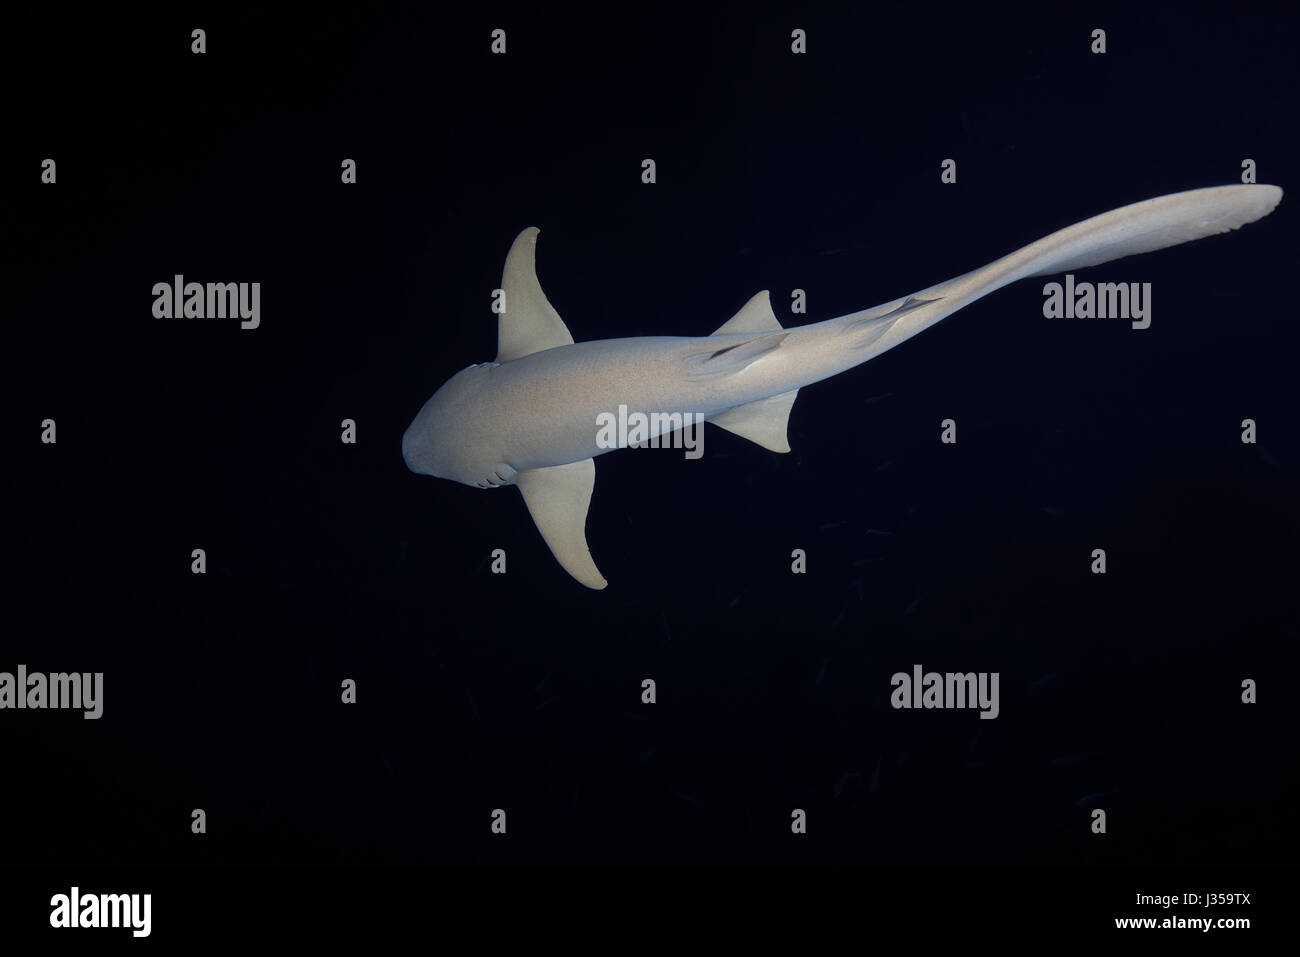 Requins nourrice fauve (Nebrius ferrugineus) nage dans la nuit, l'Océan Indien, les Maldives Banque D'Images